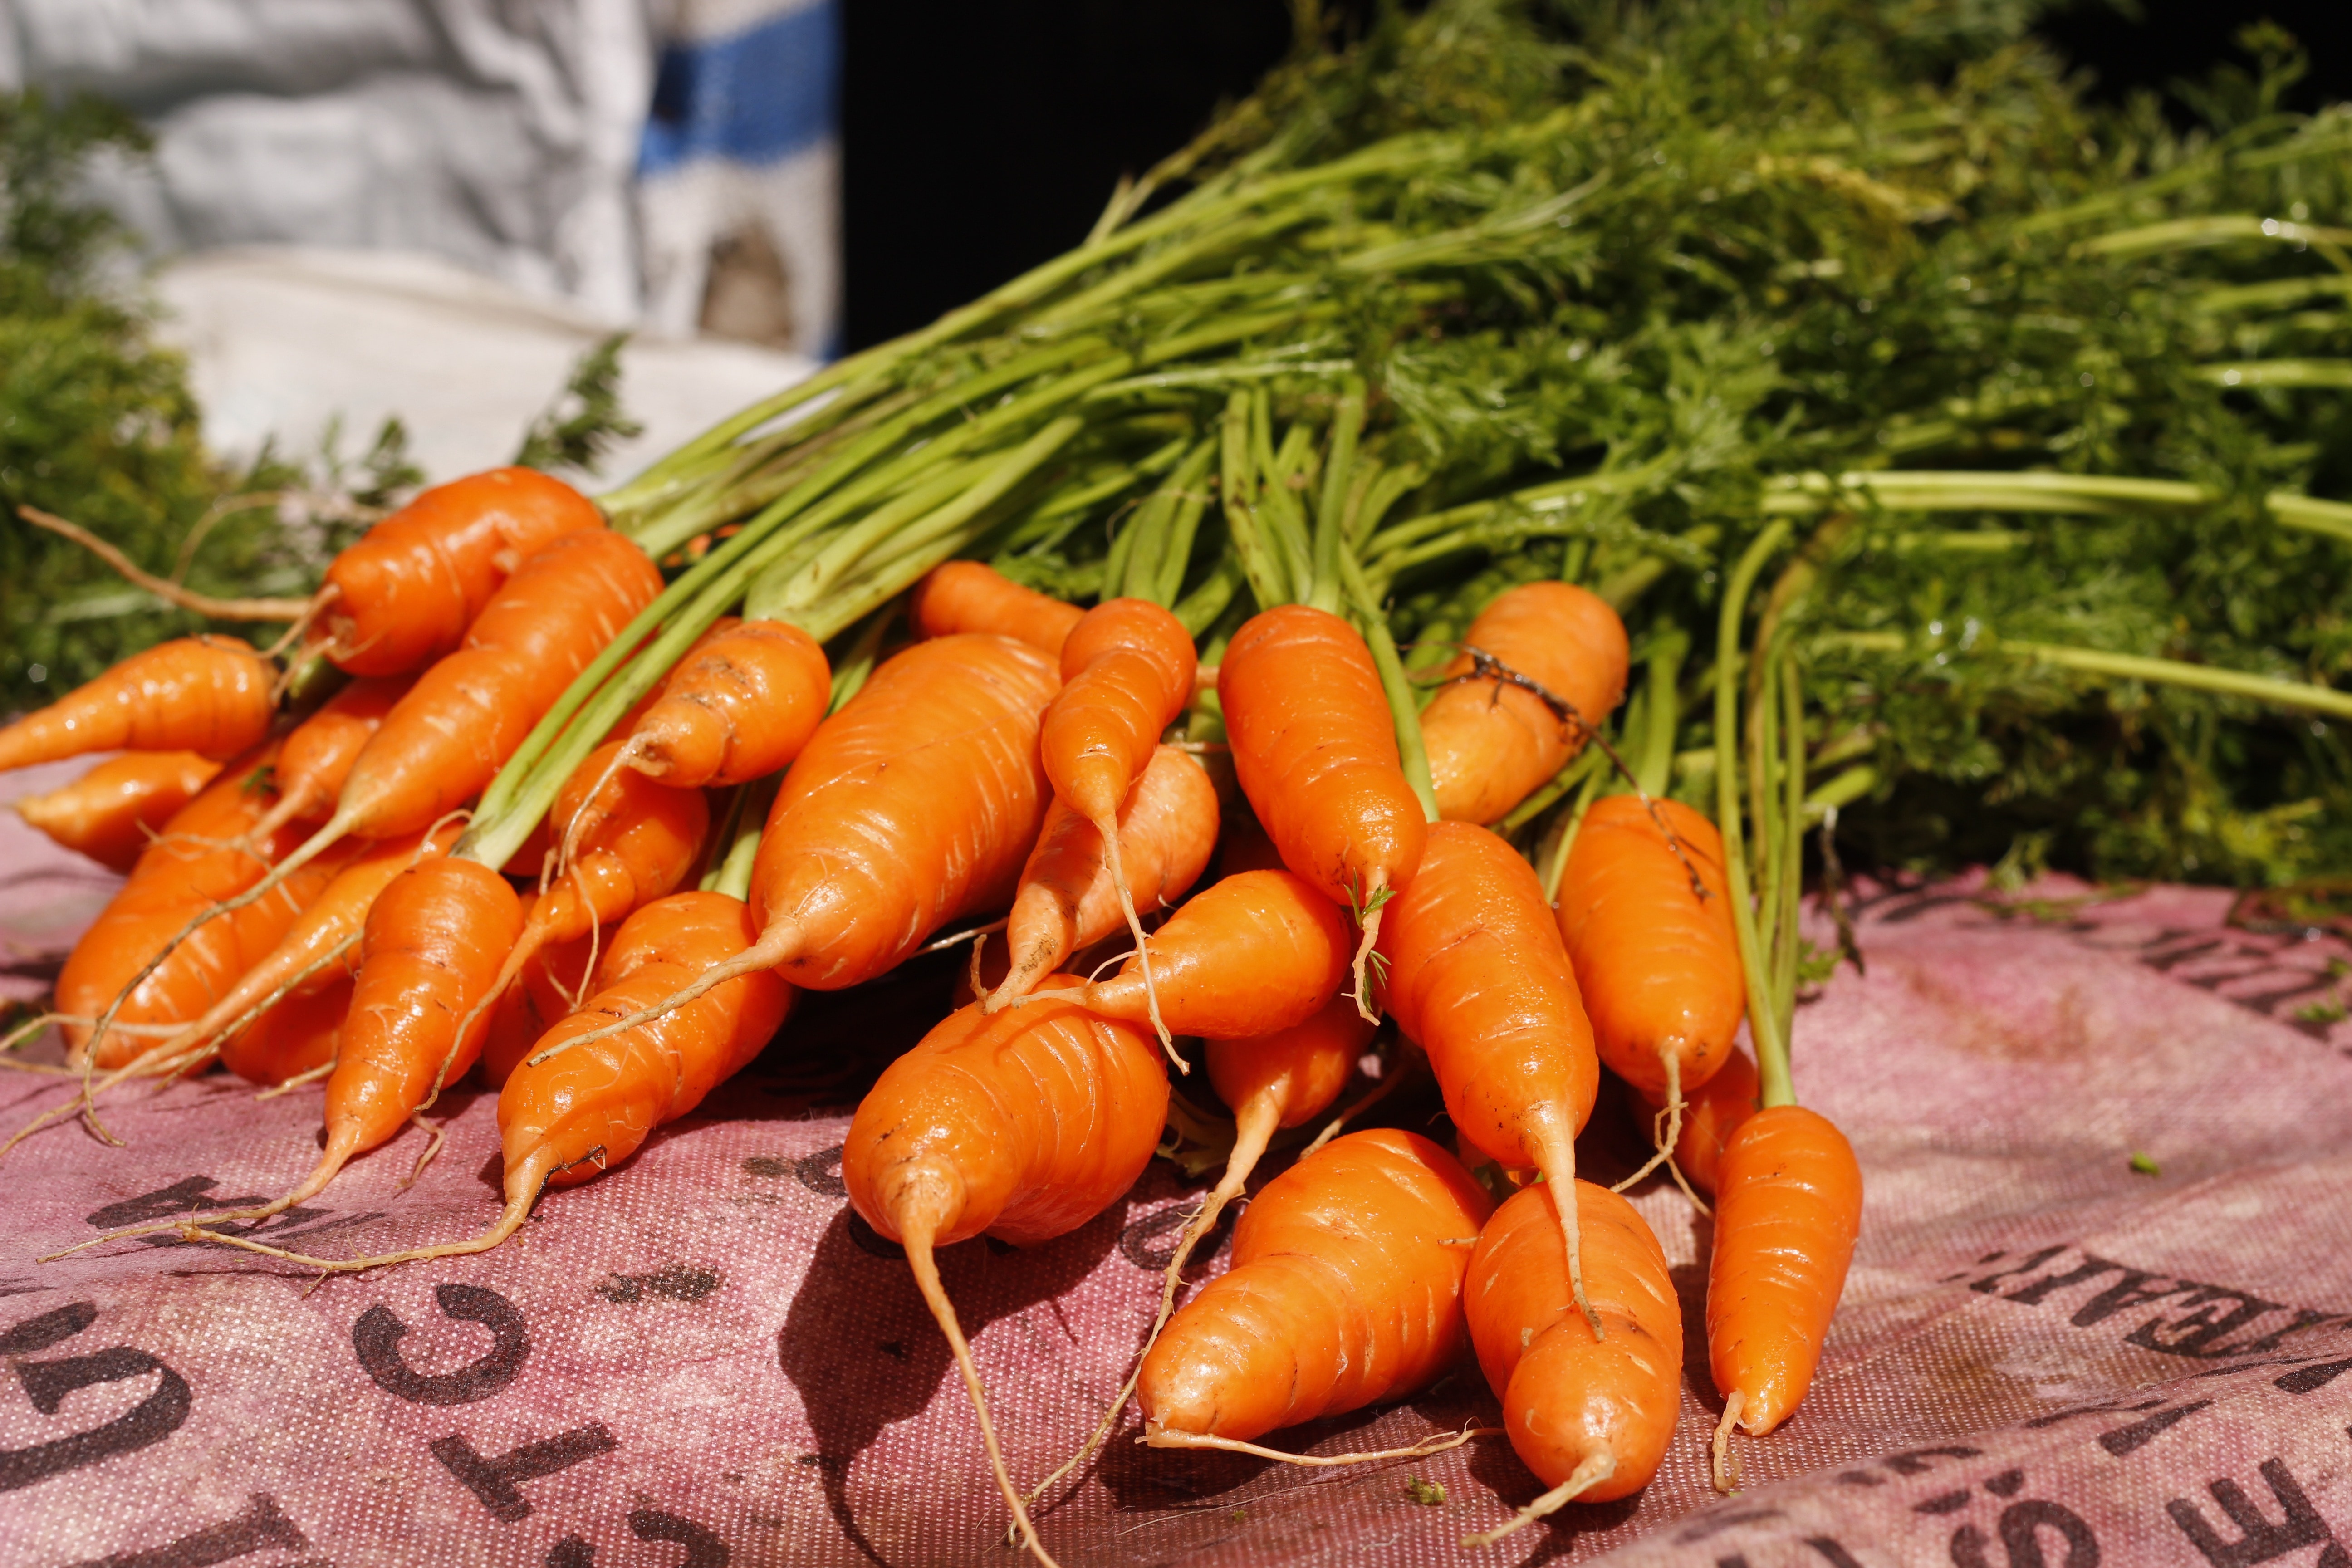 bundle of carrots